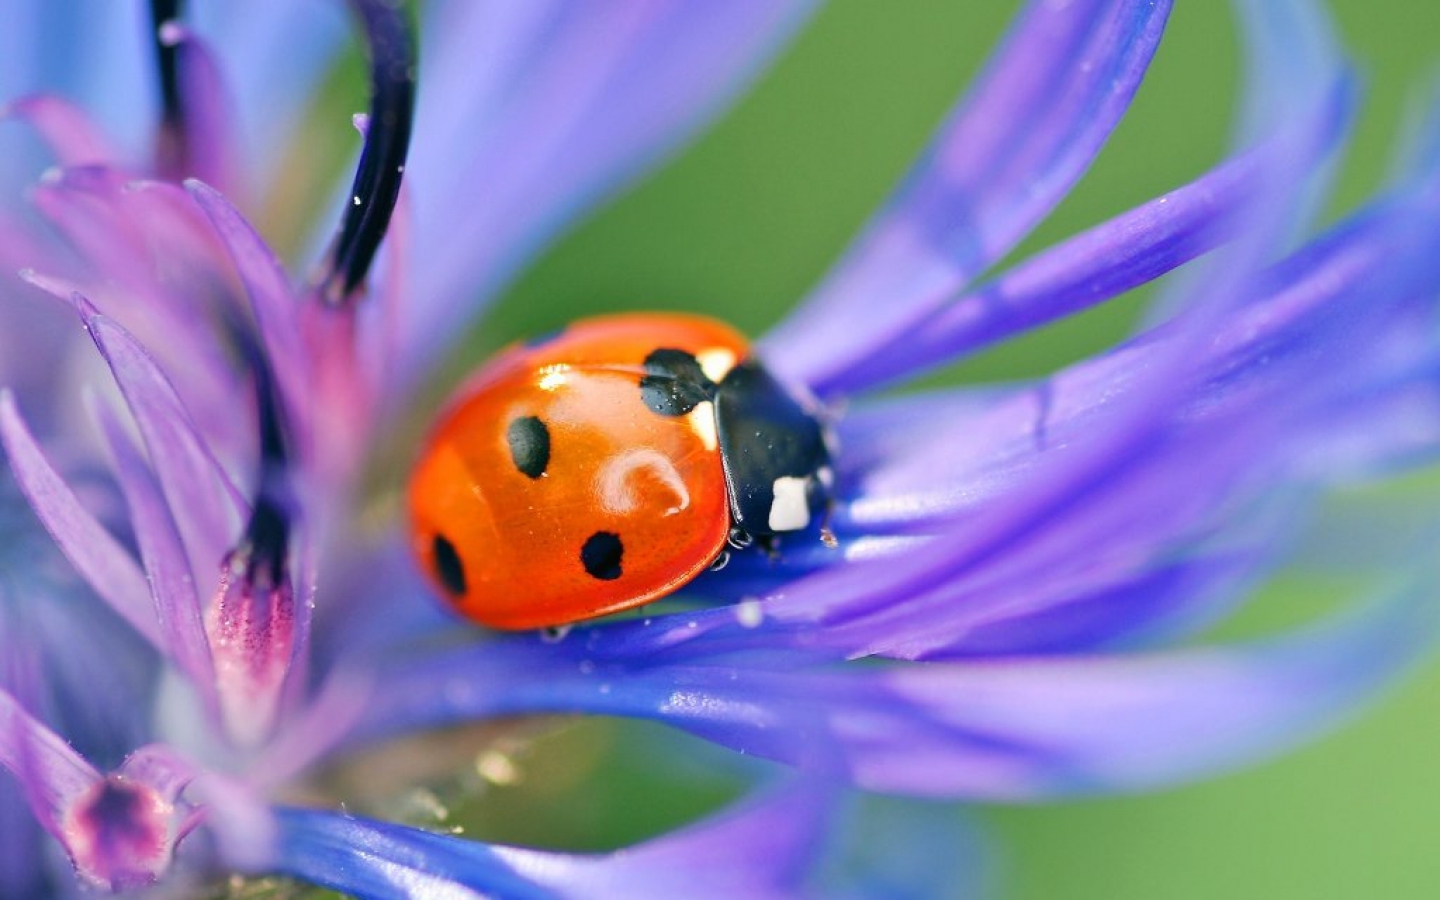 ladybug wallpaper,insect,ladybug,blue,macro photography,invertebrate